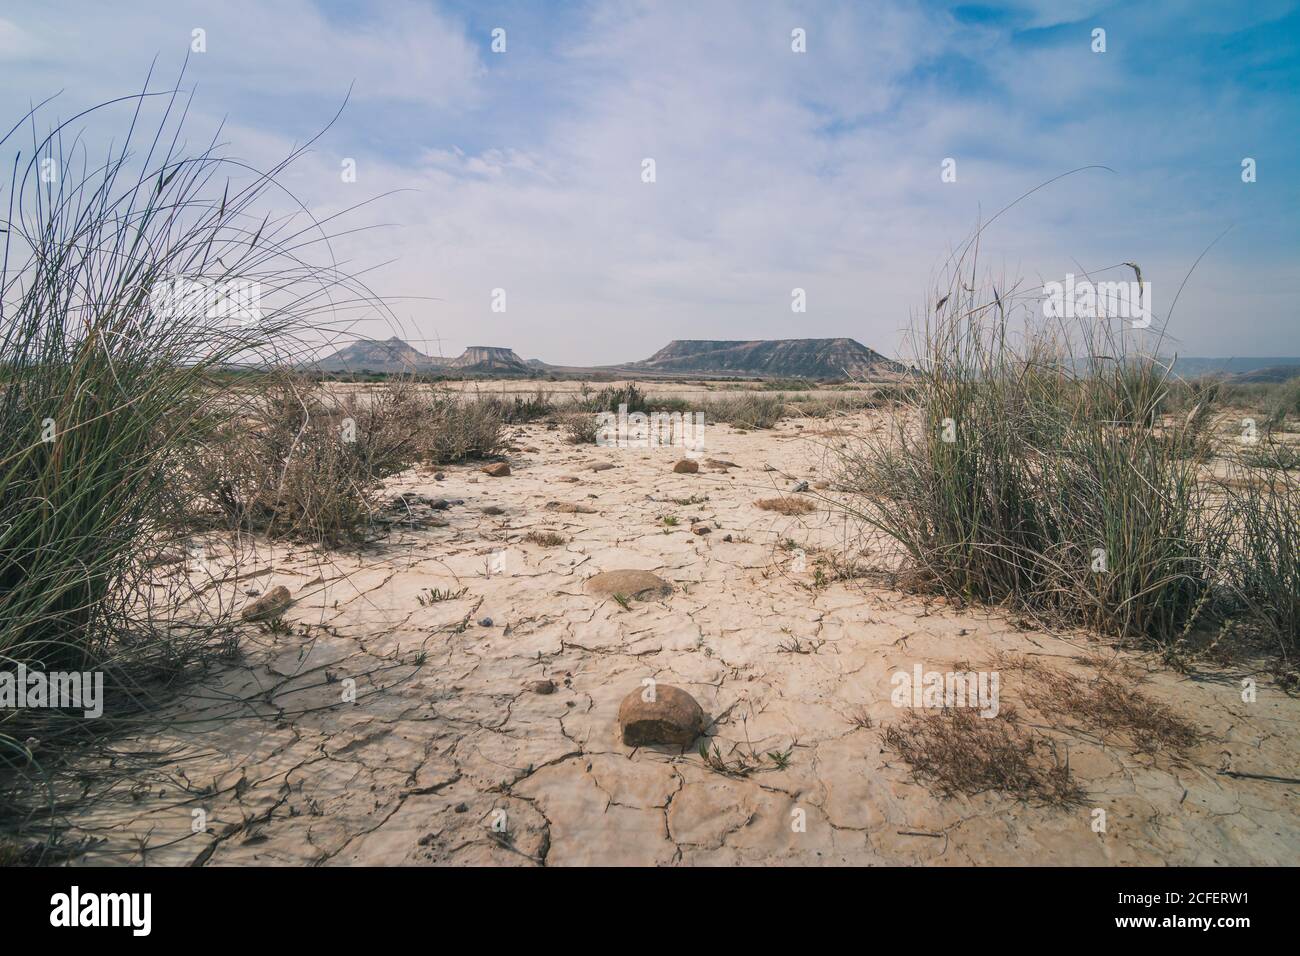 Paysage désertique étonnant avec une végétation sèche s'étendant au bleu nuageux Ciel et collines grises dans le semi-désert de Bardenas Reales Navarra Espagne Banque D'Images